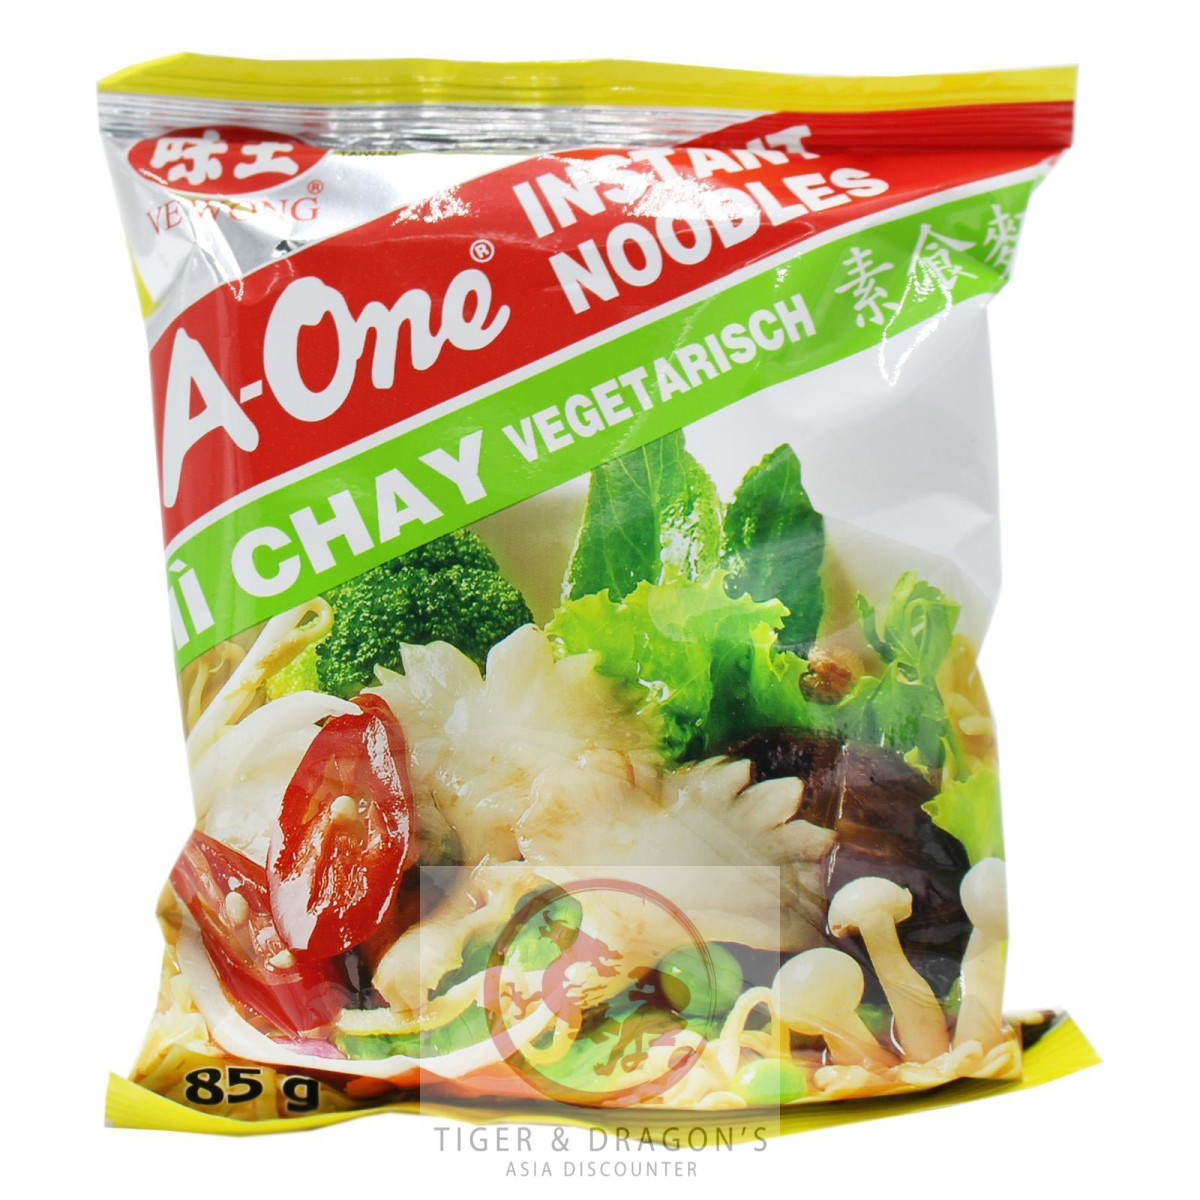 A-One Instantnudeln vegetarisch Geschmack 85g Mi Chay